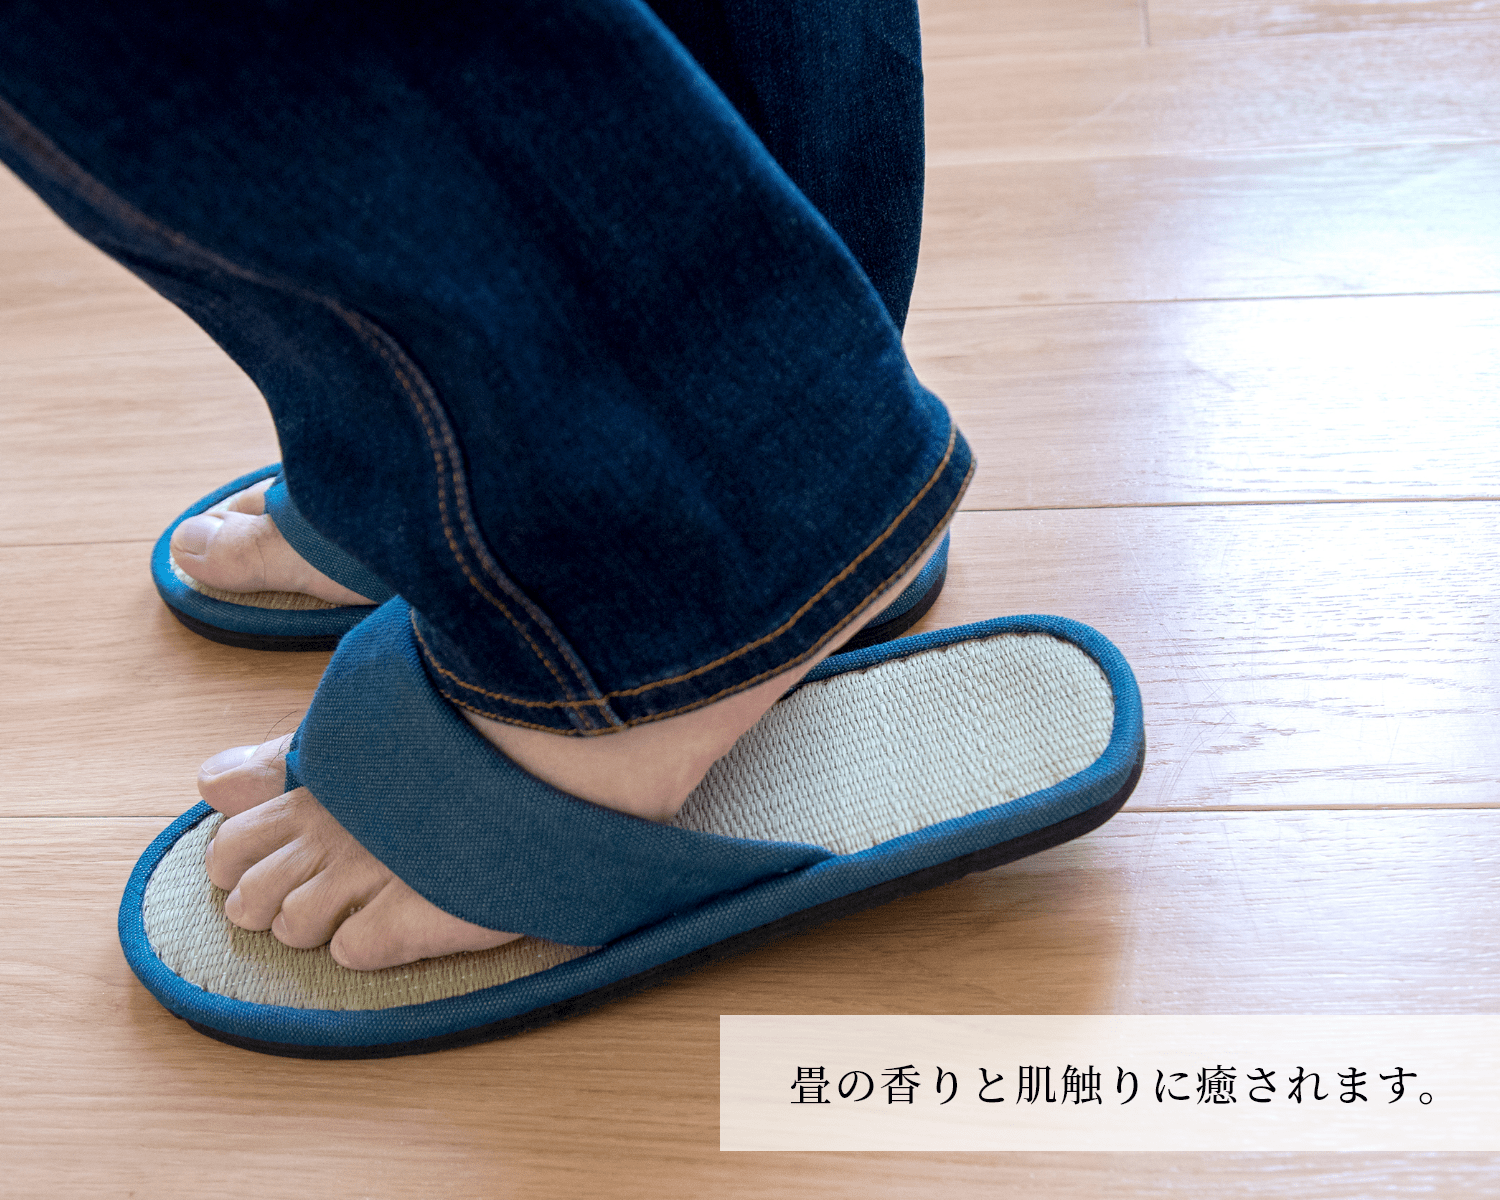 日本製 鼻緒 畳スリッパ Lサイズ ( トングサンダルタイプ 室内履き